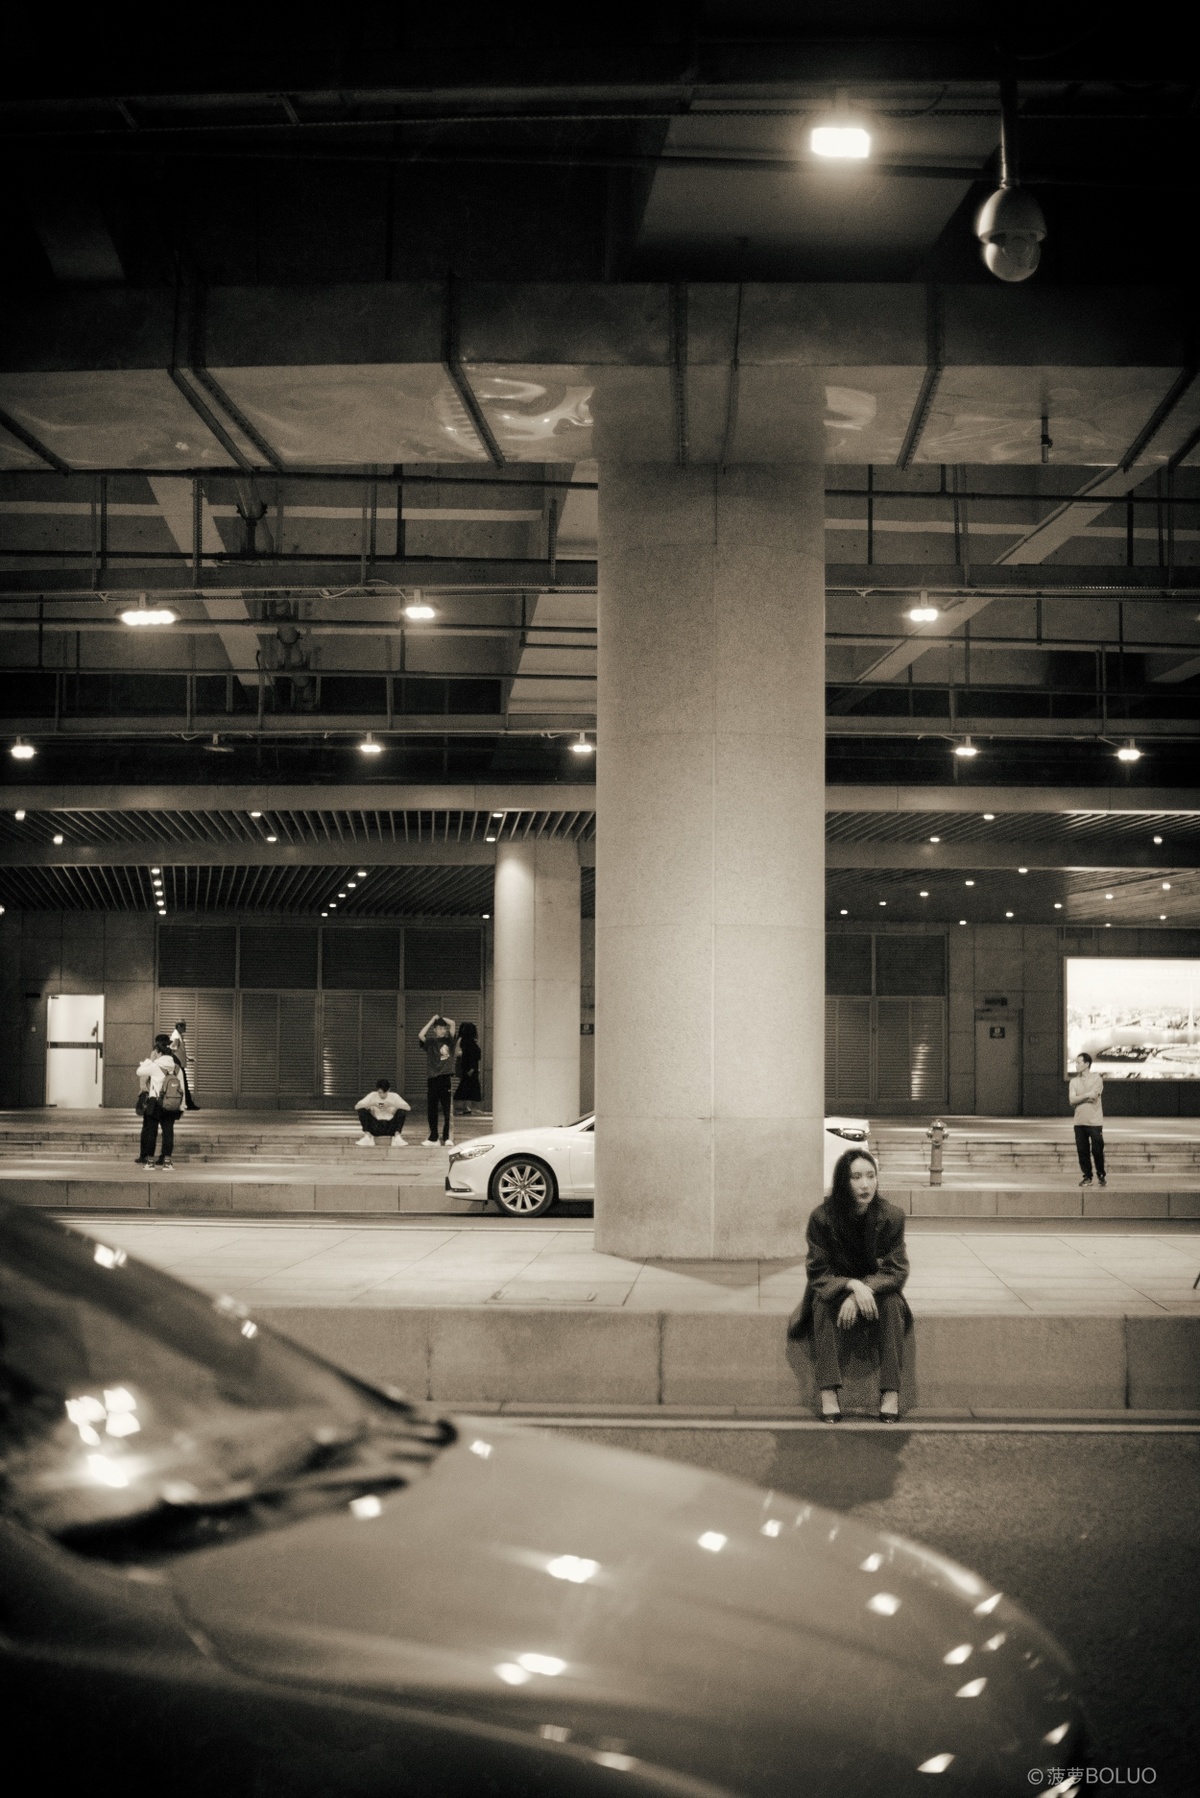 一张黑白照片 夜晚的停车场 街上有辆车 地上坐着一个人。